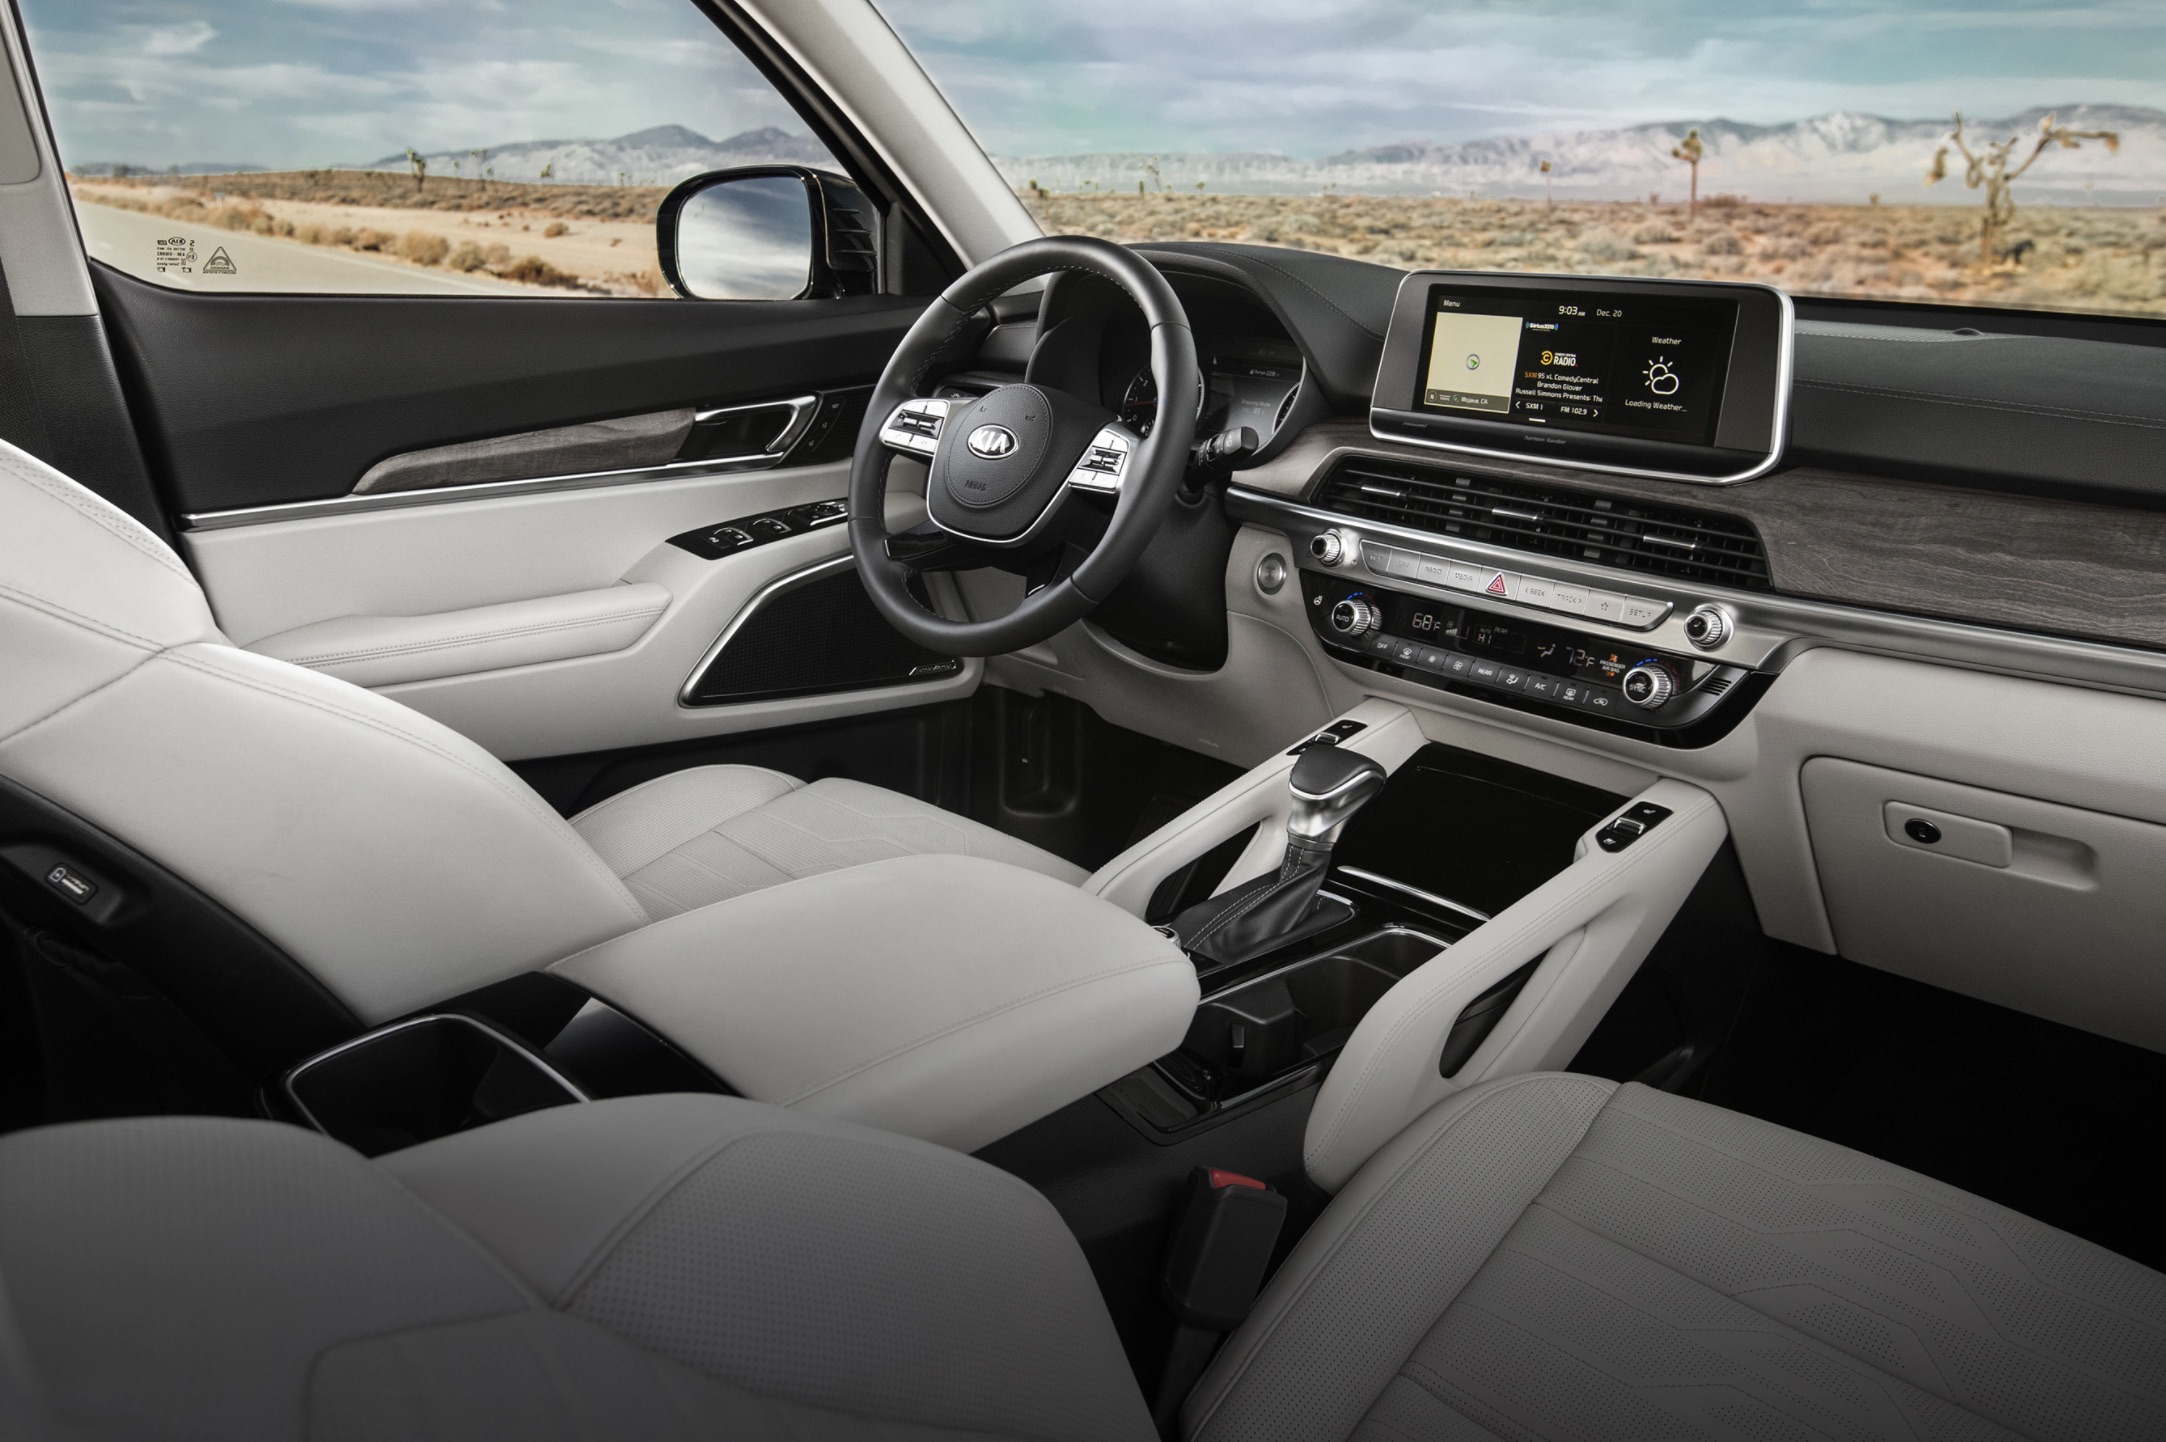 Telluride is a 2020 Autotrader Best Car Interior Under $50,000